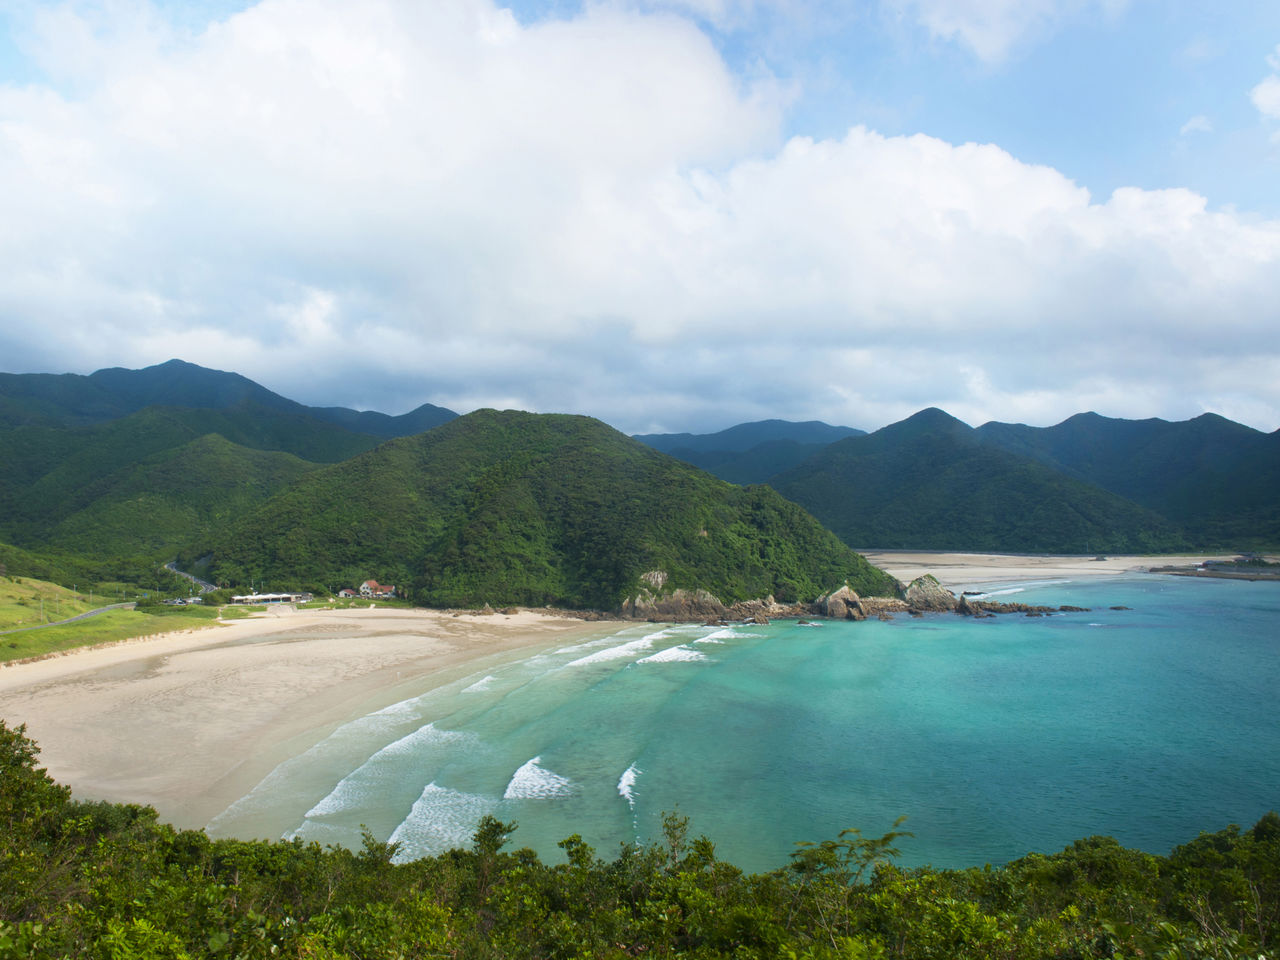 La playa de Takahama con su hermoso mar turquesa y rodeada por la naturaleza ha sido seleccionada como una de las costas más bellas de Japón.